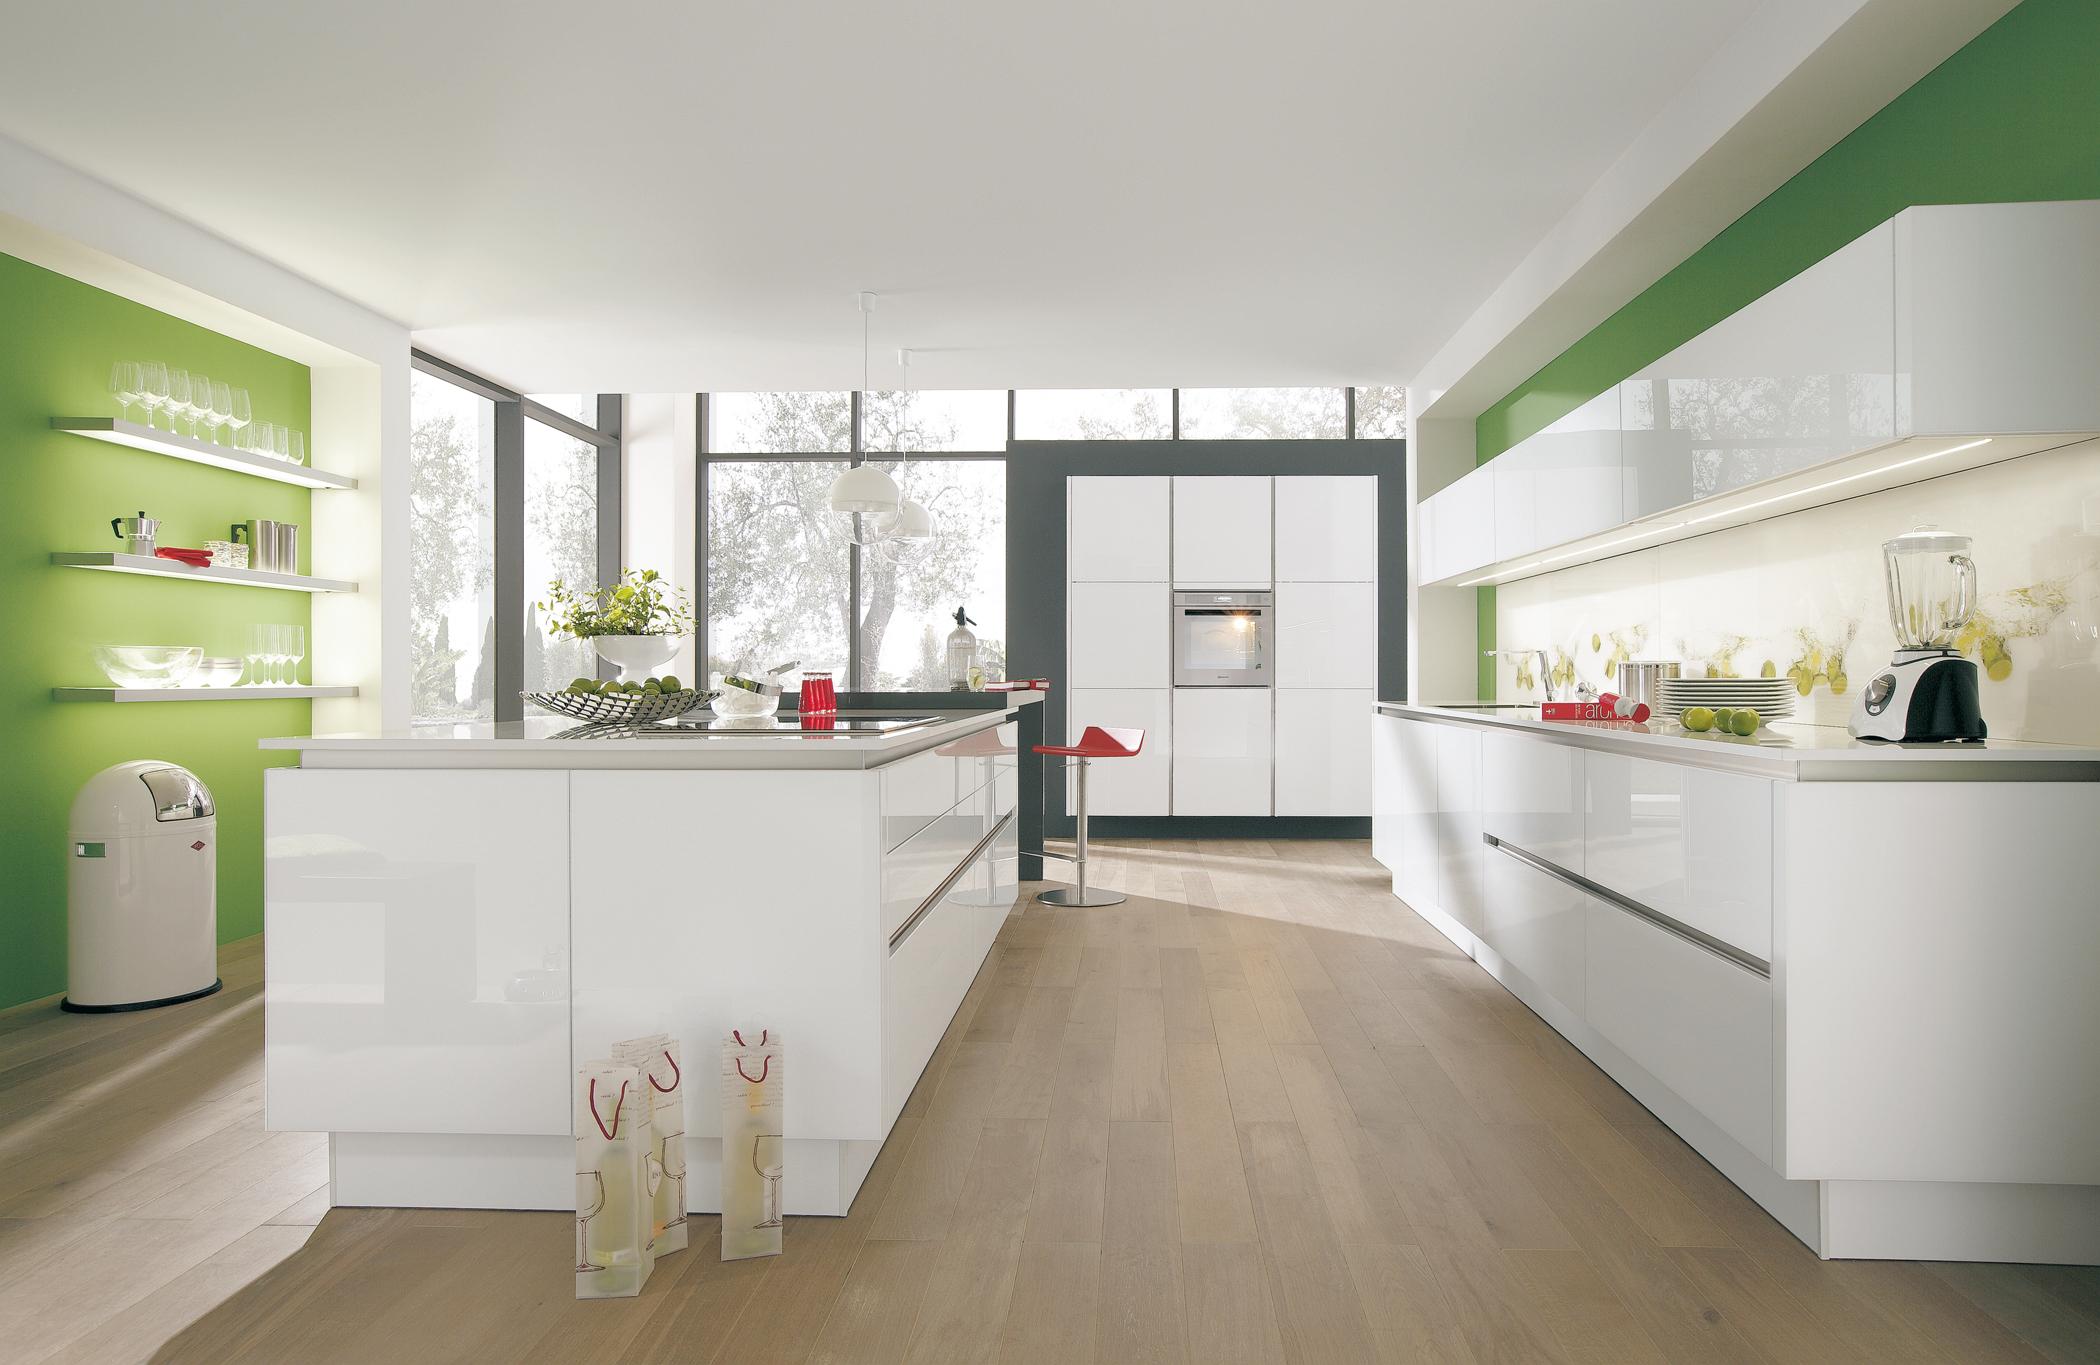 Puristische Küche mit Kücheninsel #weißeküche #kücheninsel #küchentresen #puristischeküche ©Wellmann/Alno AG